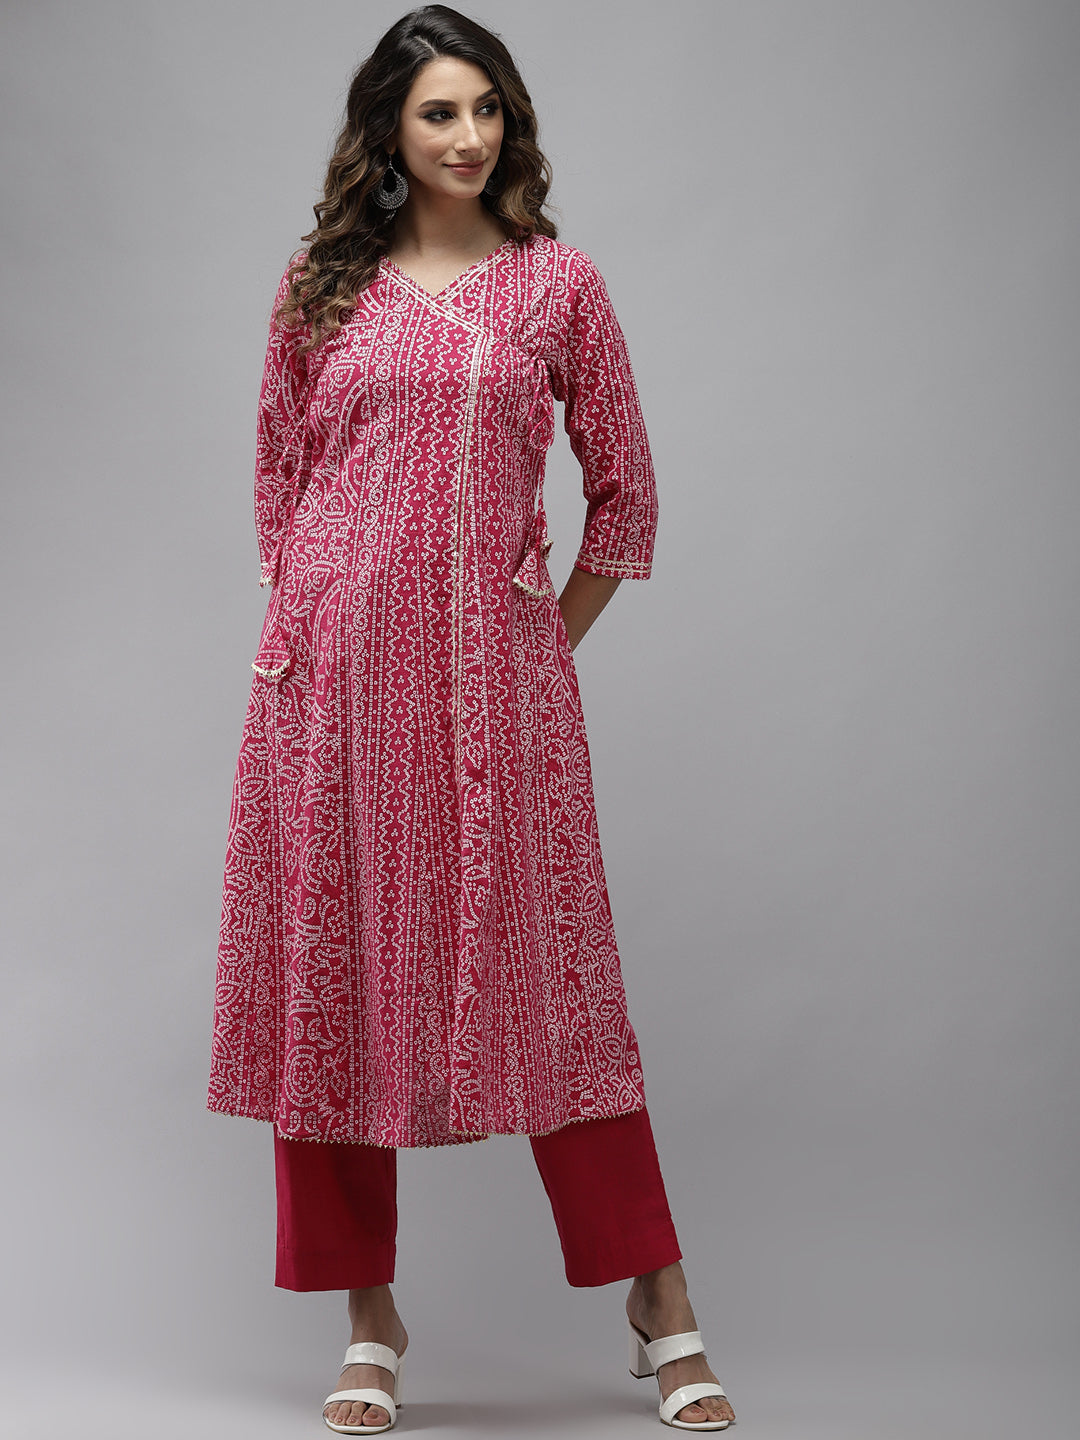 Women's Cotton Pink Embroidered Anarkali Kurta Trouser Set - Navyaa